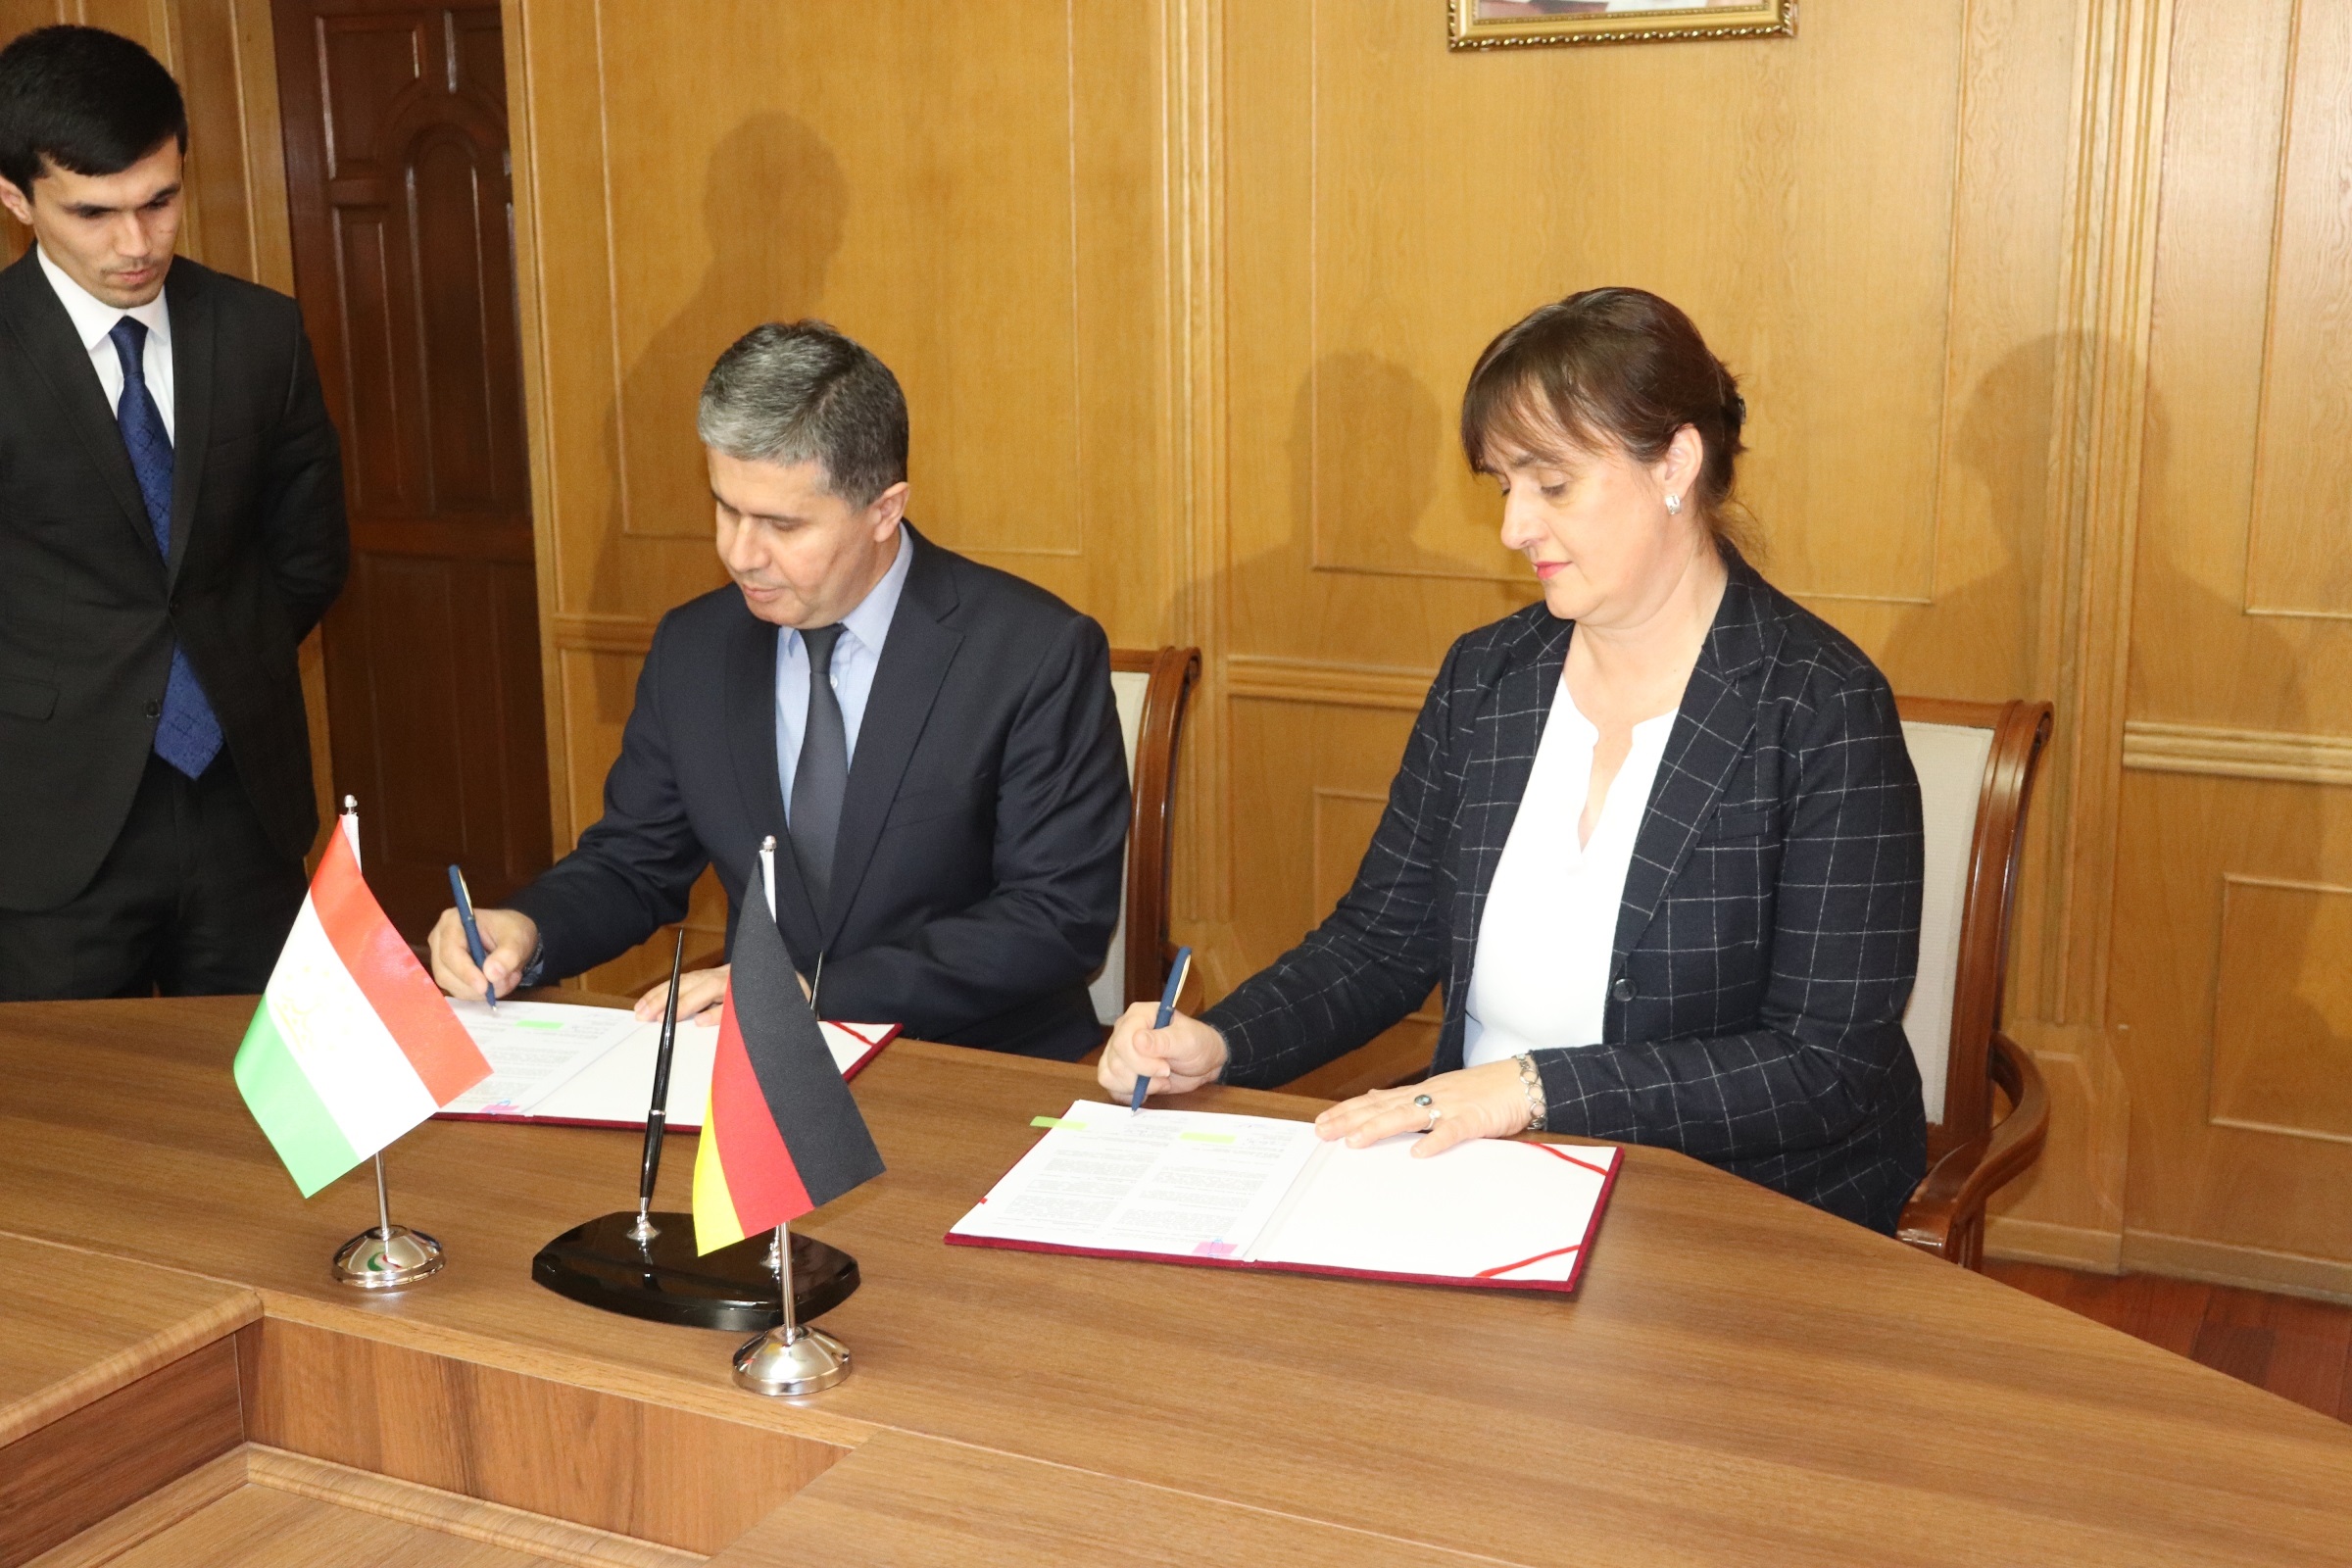 Подписание Соглашения об упрощении процедур торговли между Министерством экономического развития и торговли Республики Таджикистан и Немецким агентством по международному сотрудничеству (GIZ).